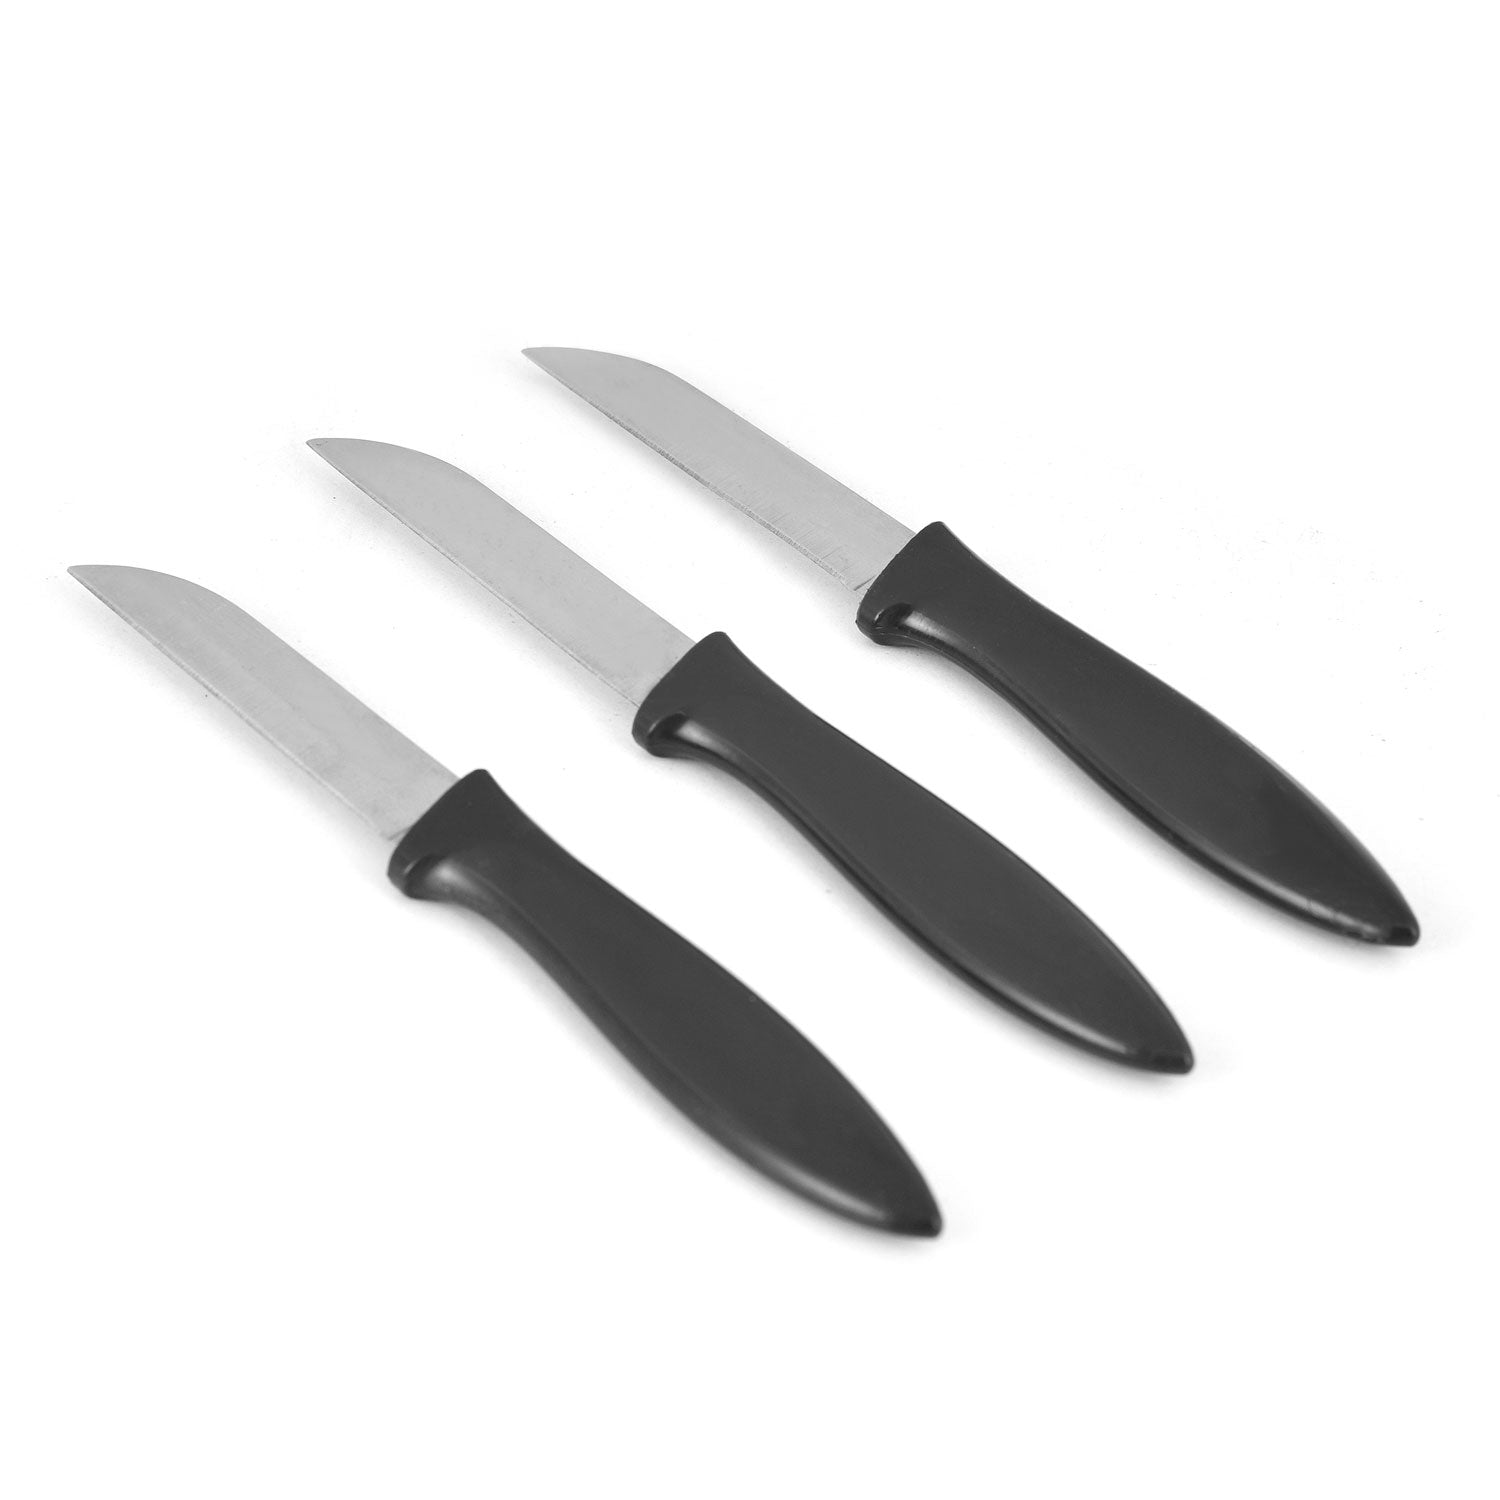 7.8 cm Knife Set of 3 Grey